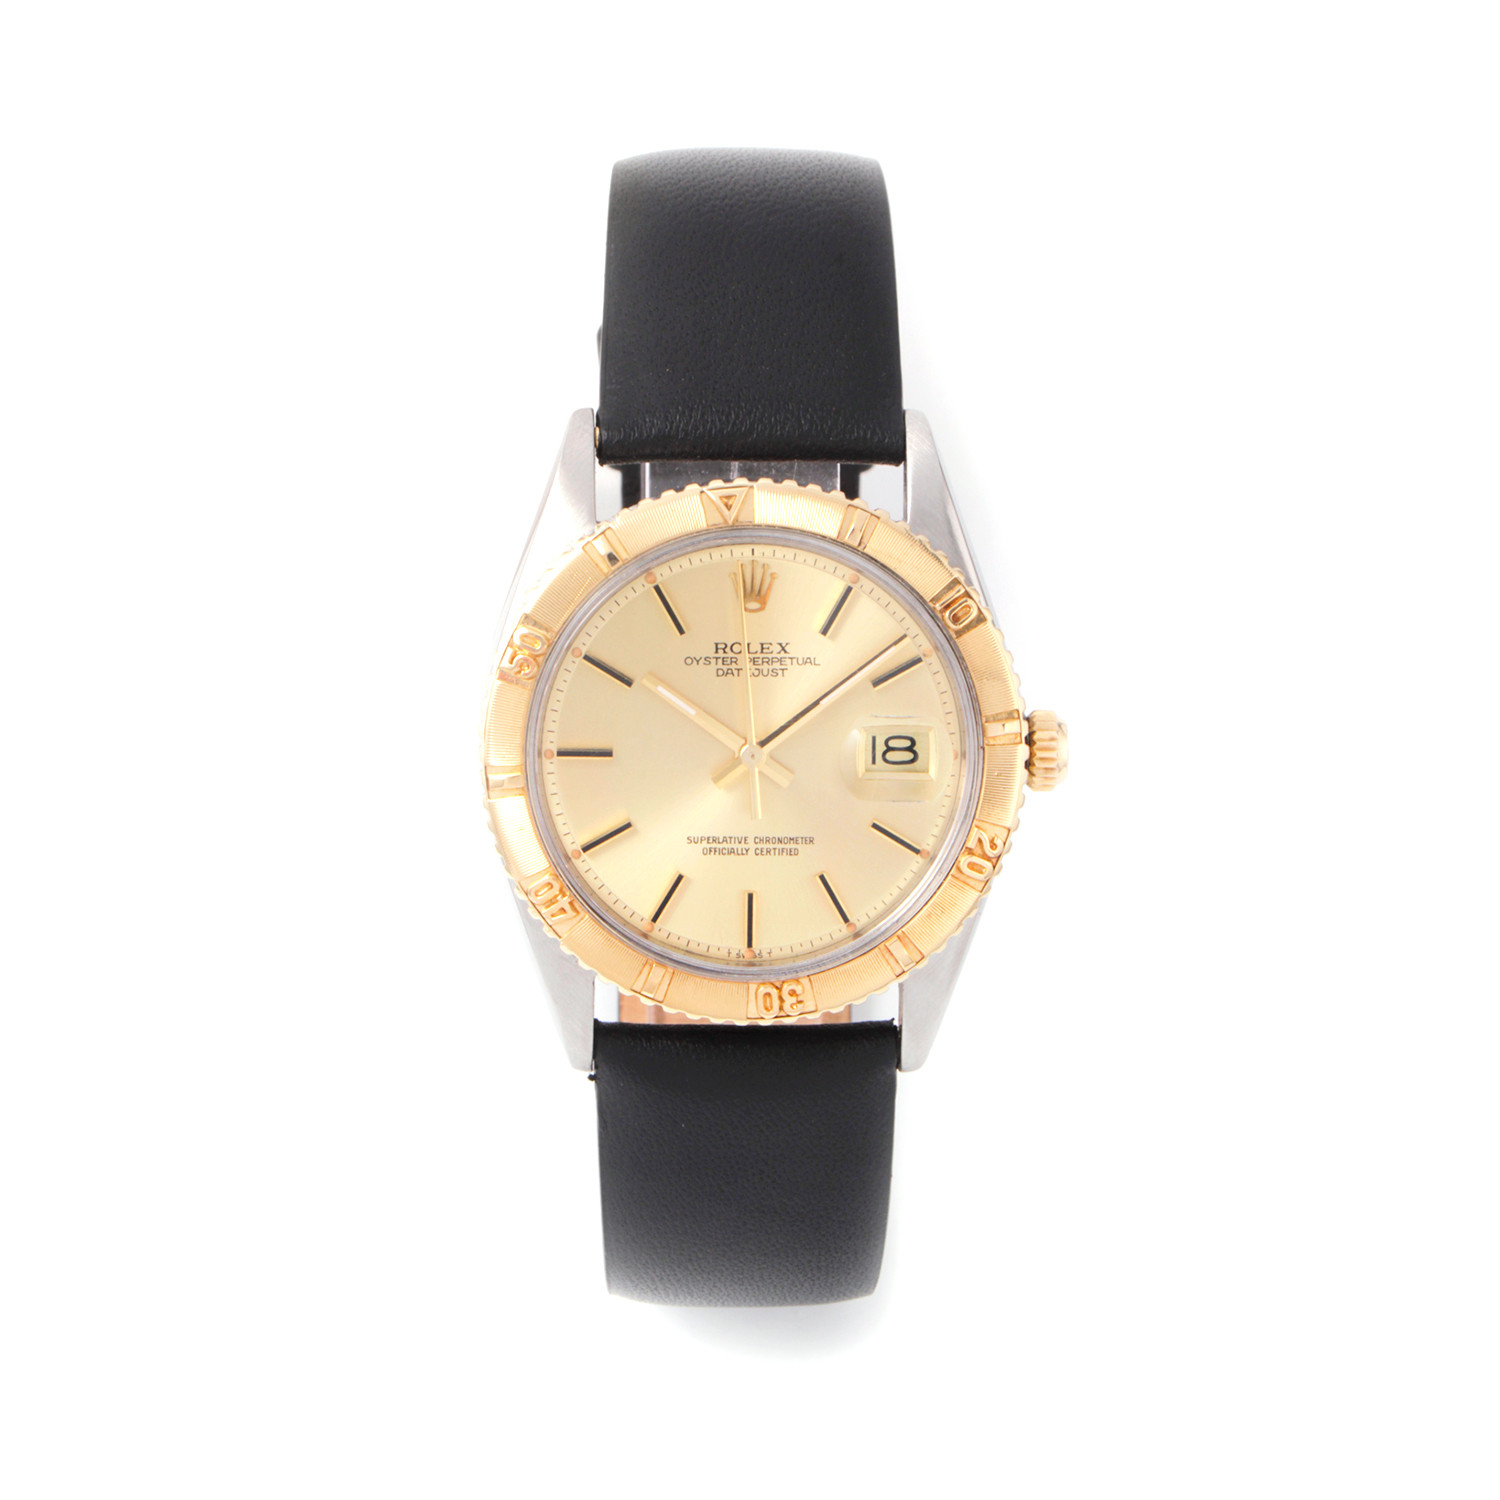 1960s - Vintage Rolex Watches 